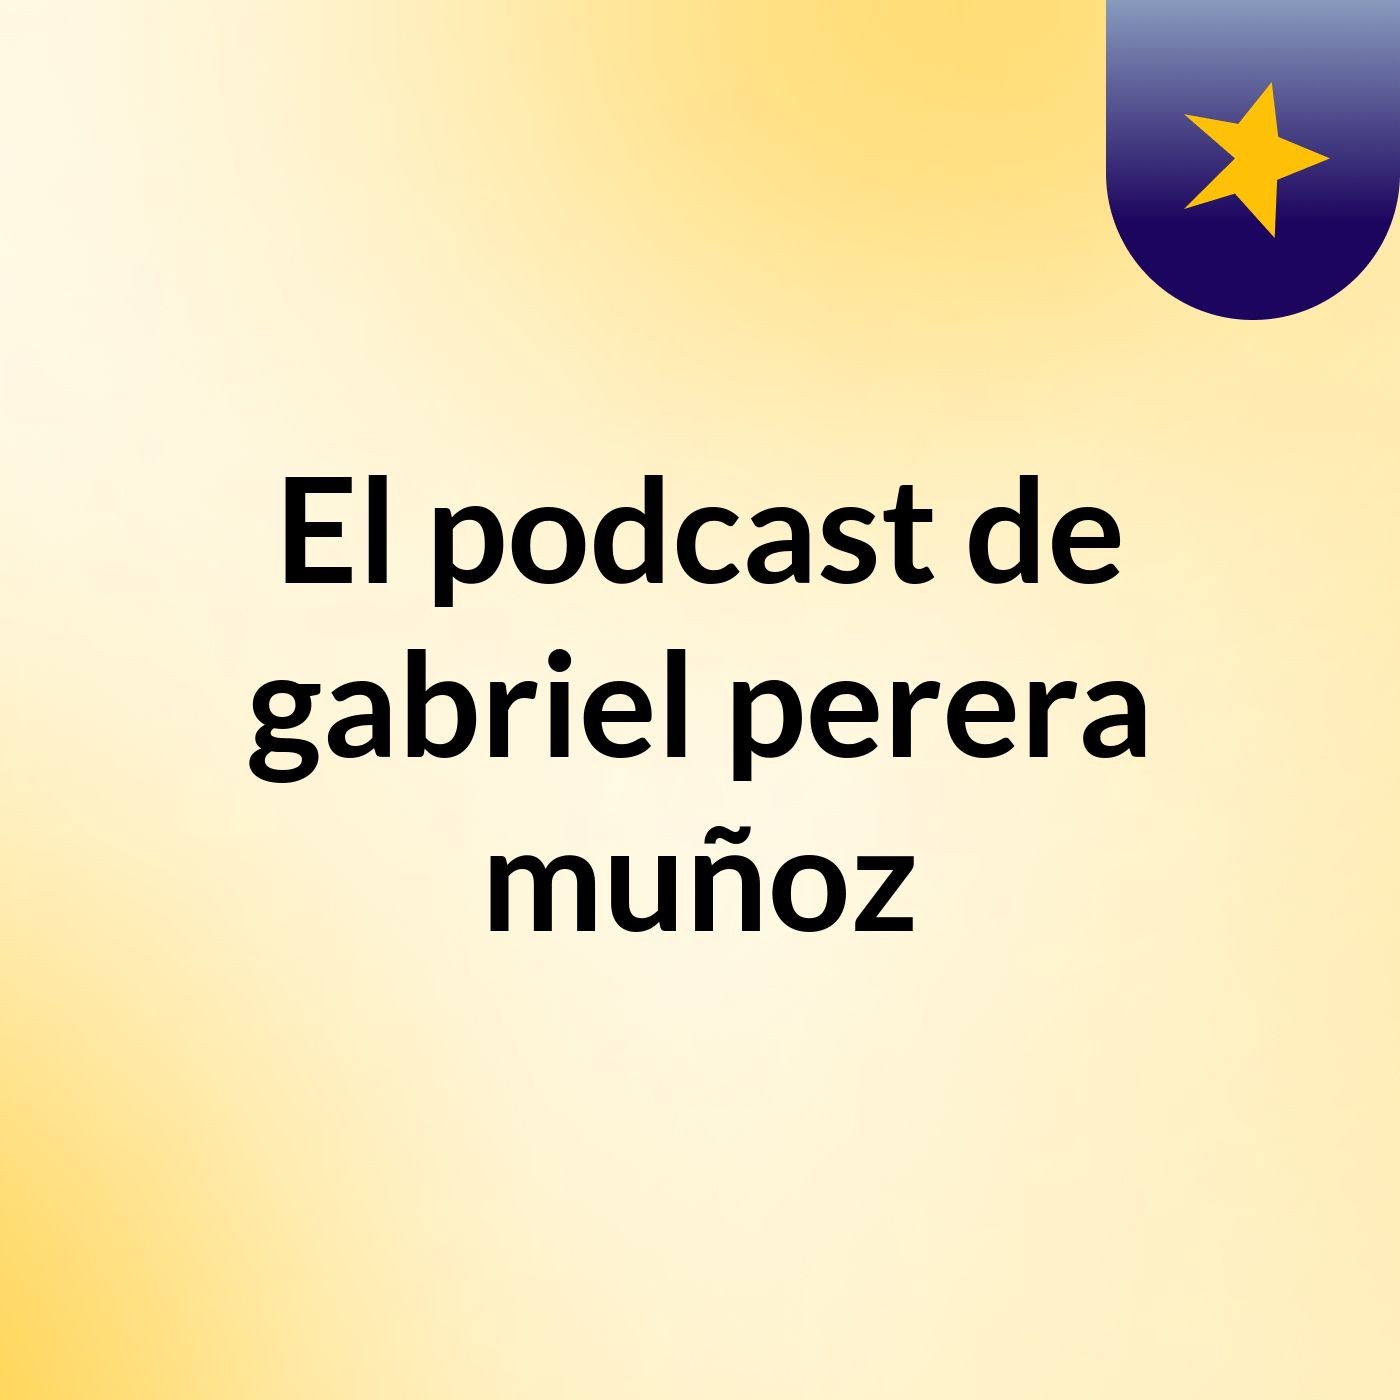 Episodio 8 - El podcast de gabriel perera muñoz